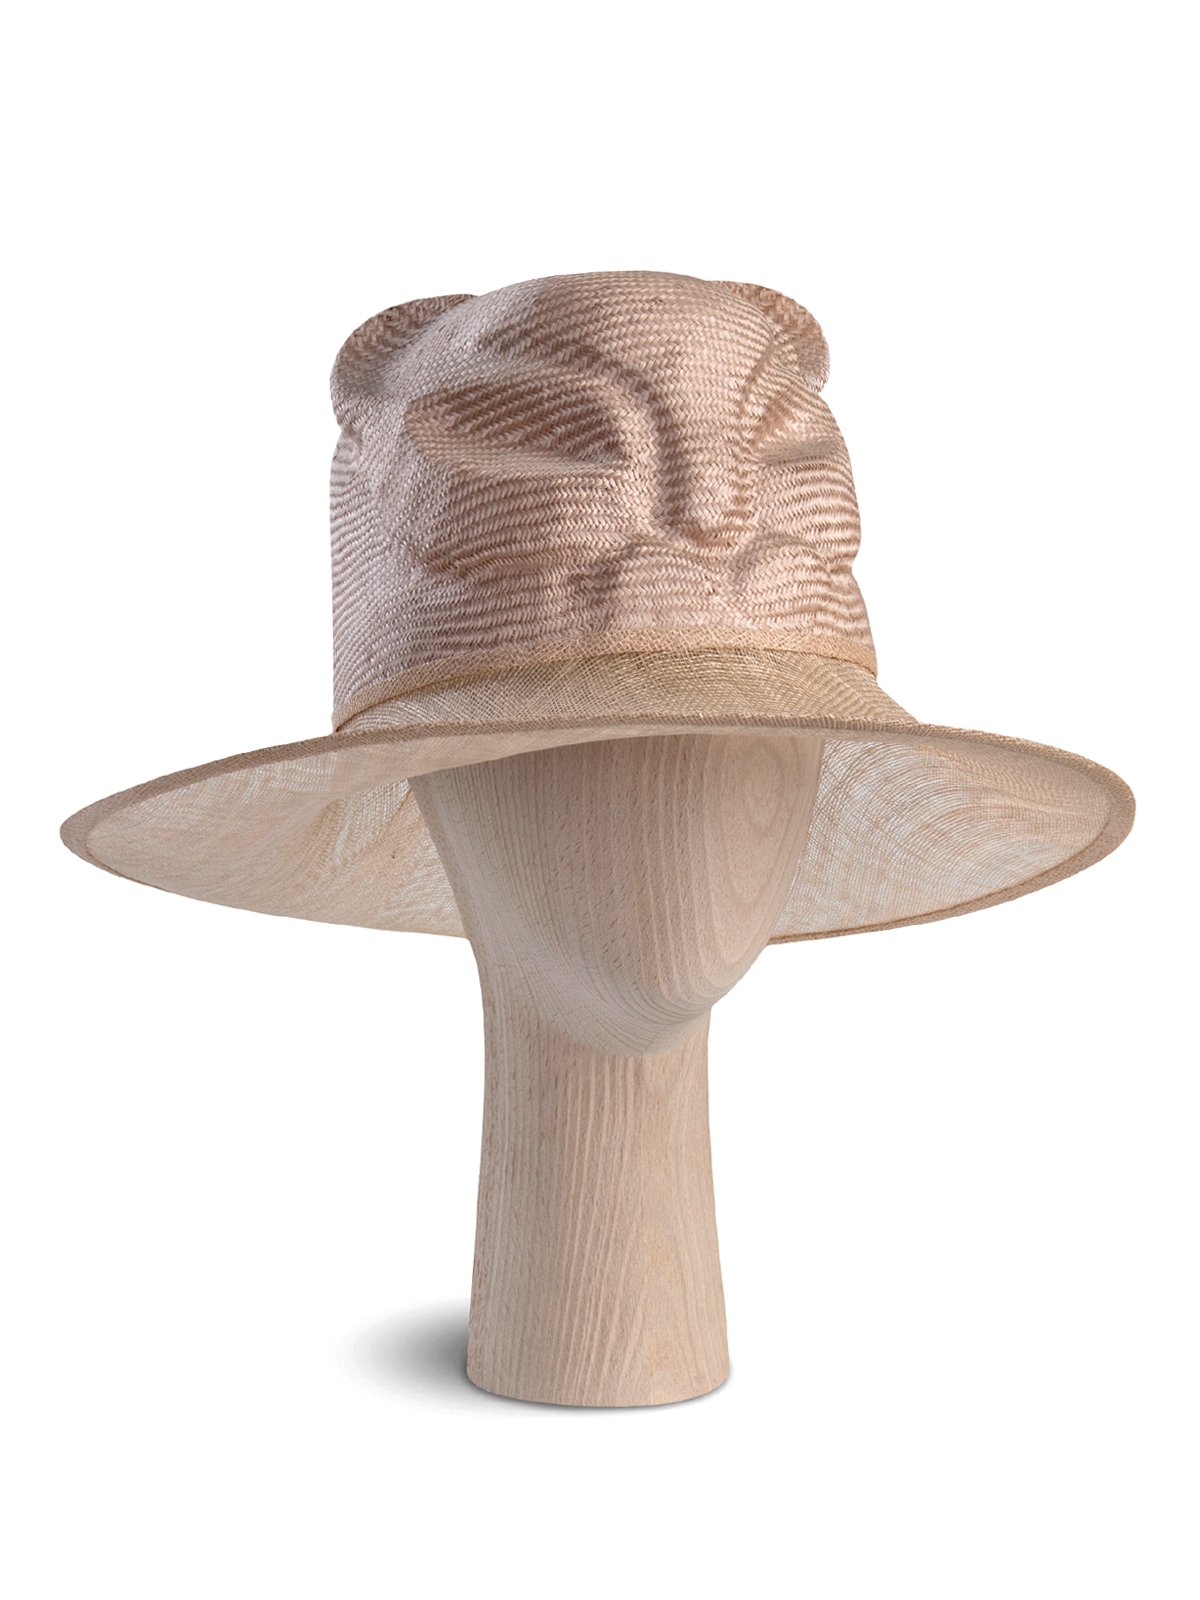 Cat Sabyssinian Hat